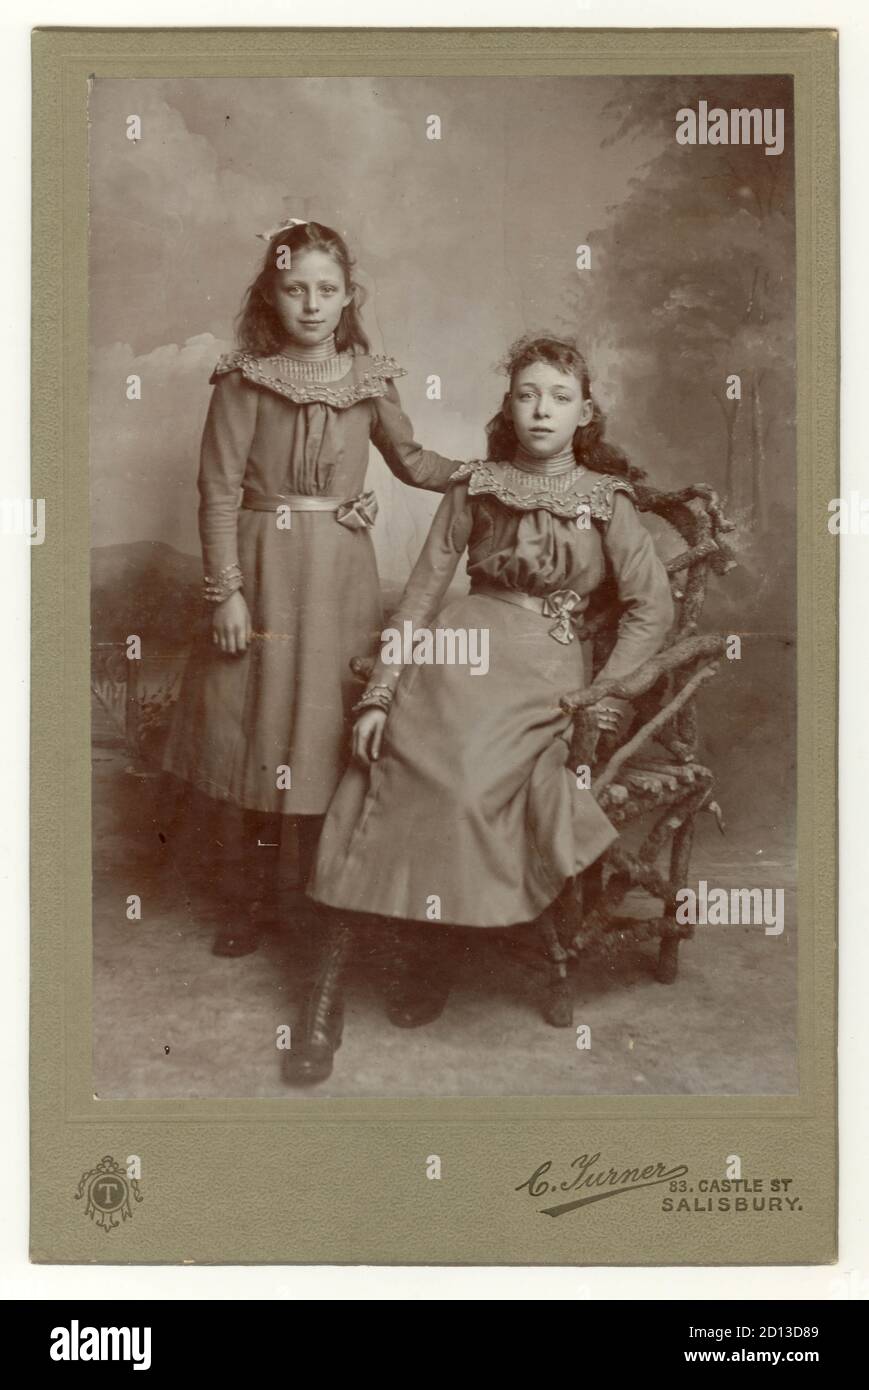 Photo du cabinet portrait de deux jolies jeunes filles, probablement sœurs - late1890 au début des années 1900, Salisbury, Wiltshire, Angleterre, Royaume-Uni Banque D'Images